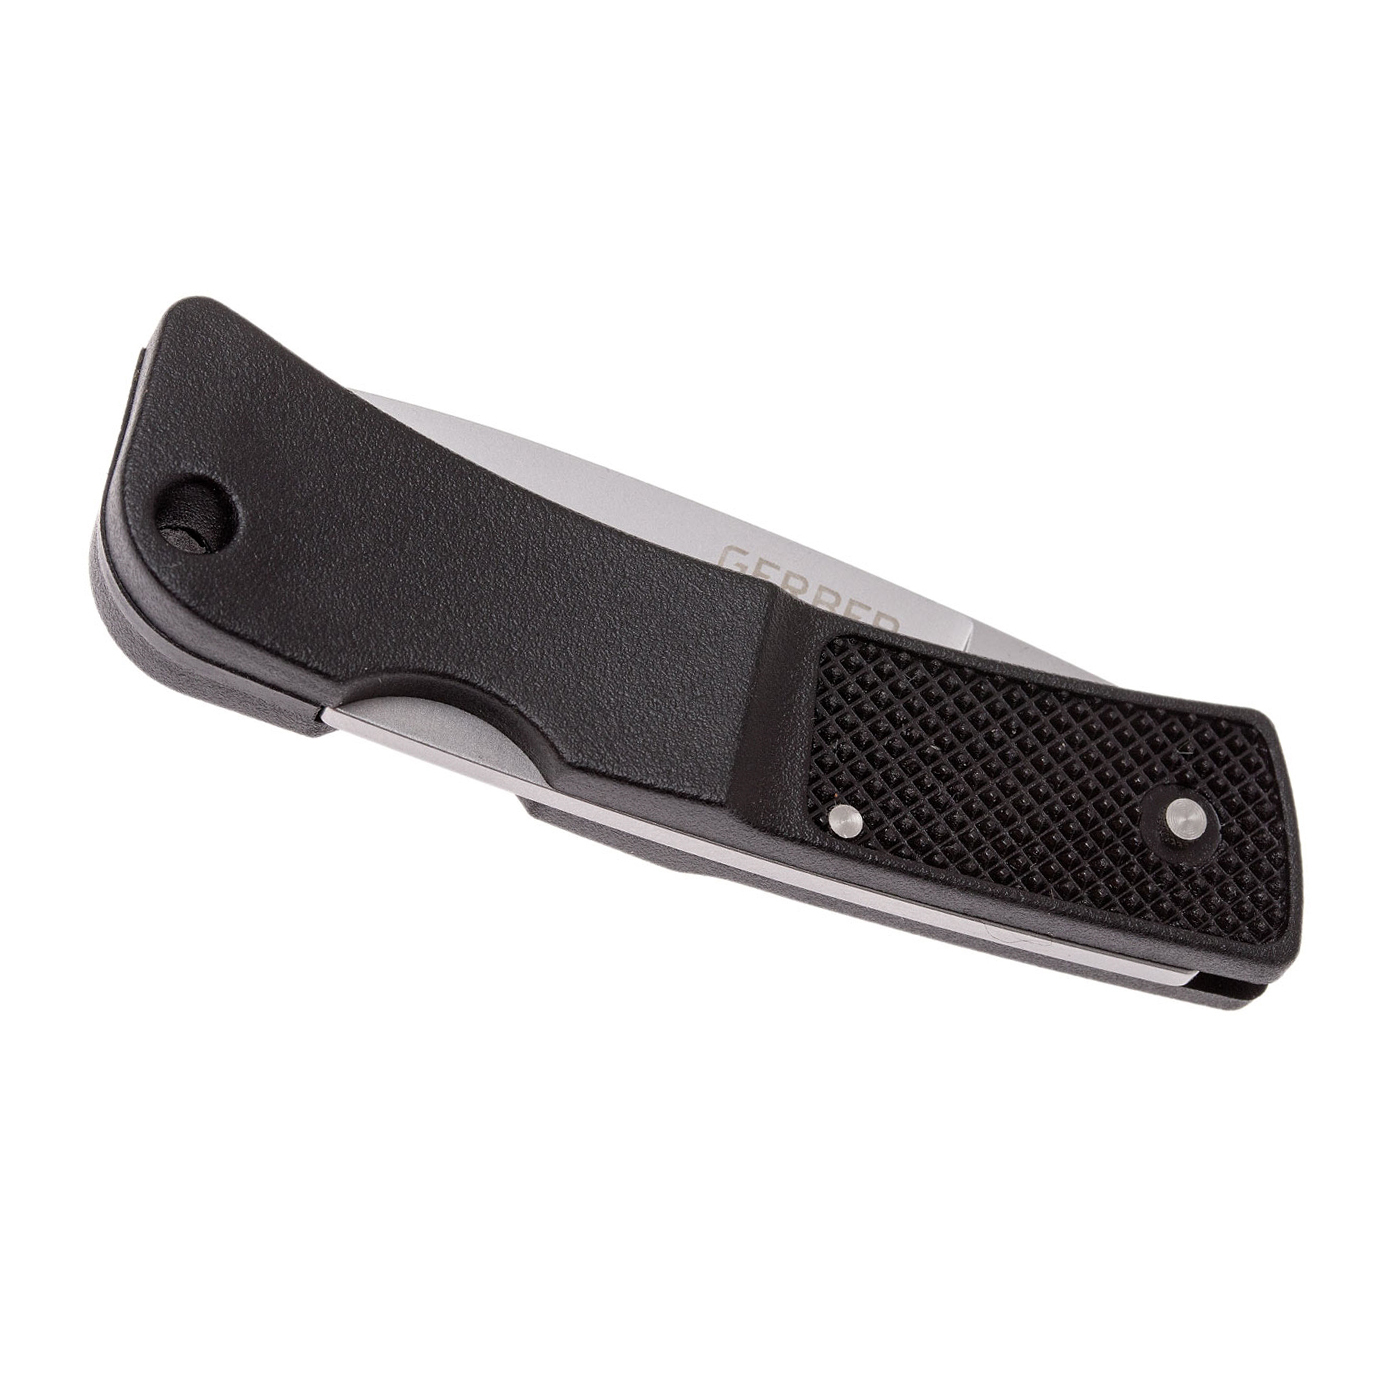 Складной нож Gerber LST Ultralight, сталь 420HC, рукоять термопластик GRN, черный - фото 7